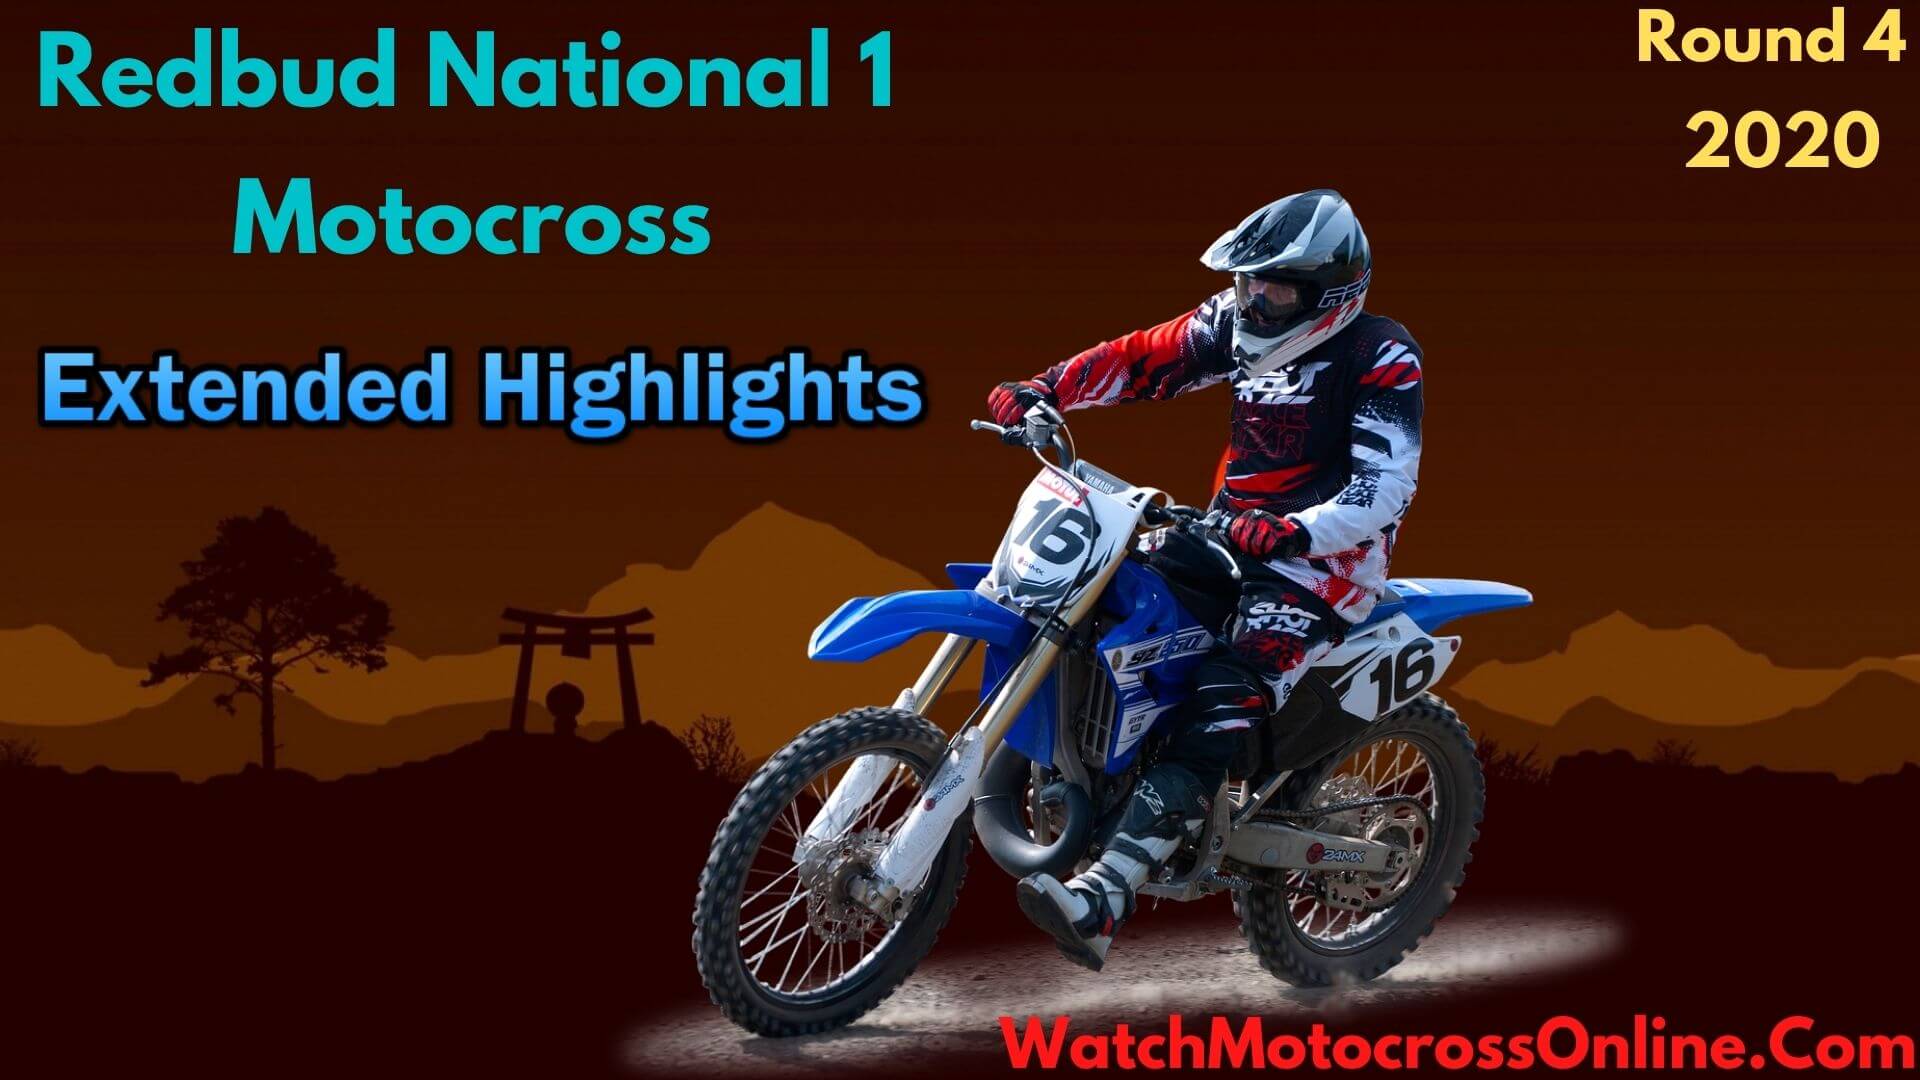 Redbud National 1 Rd 4 Extended Highlights 2020 Motocross